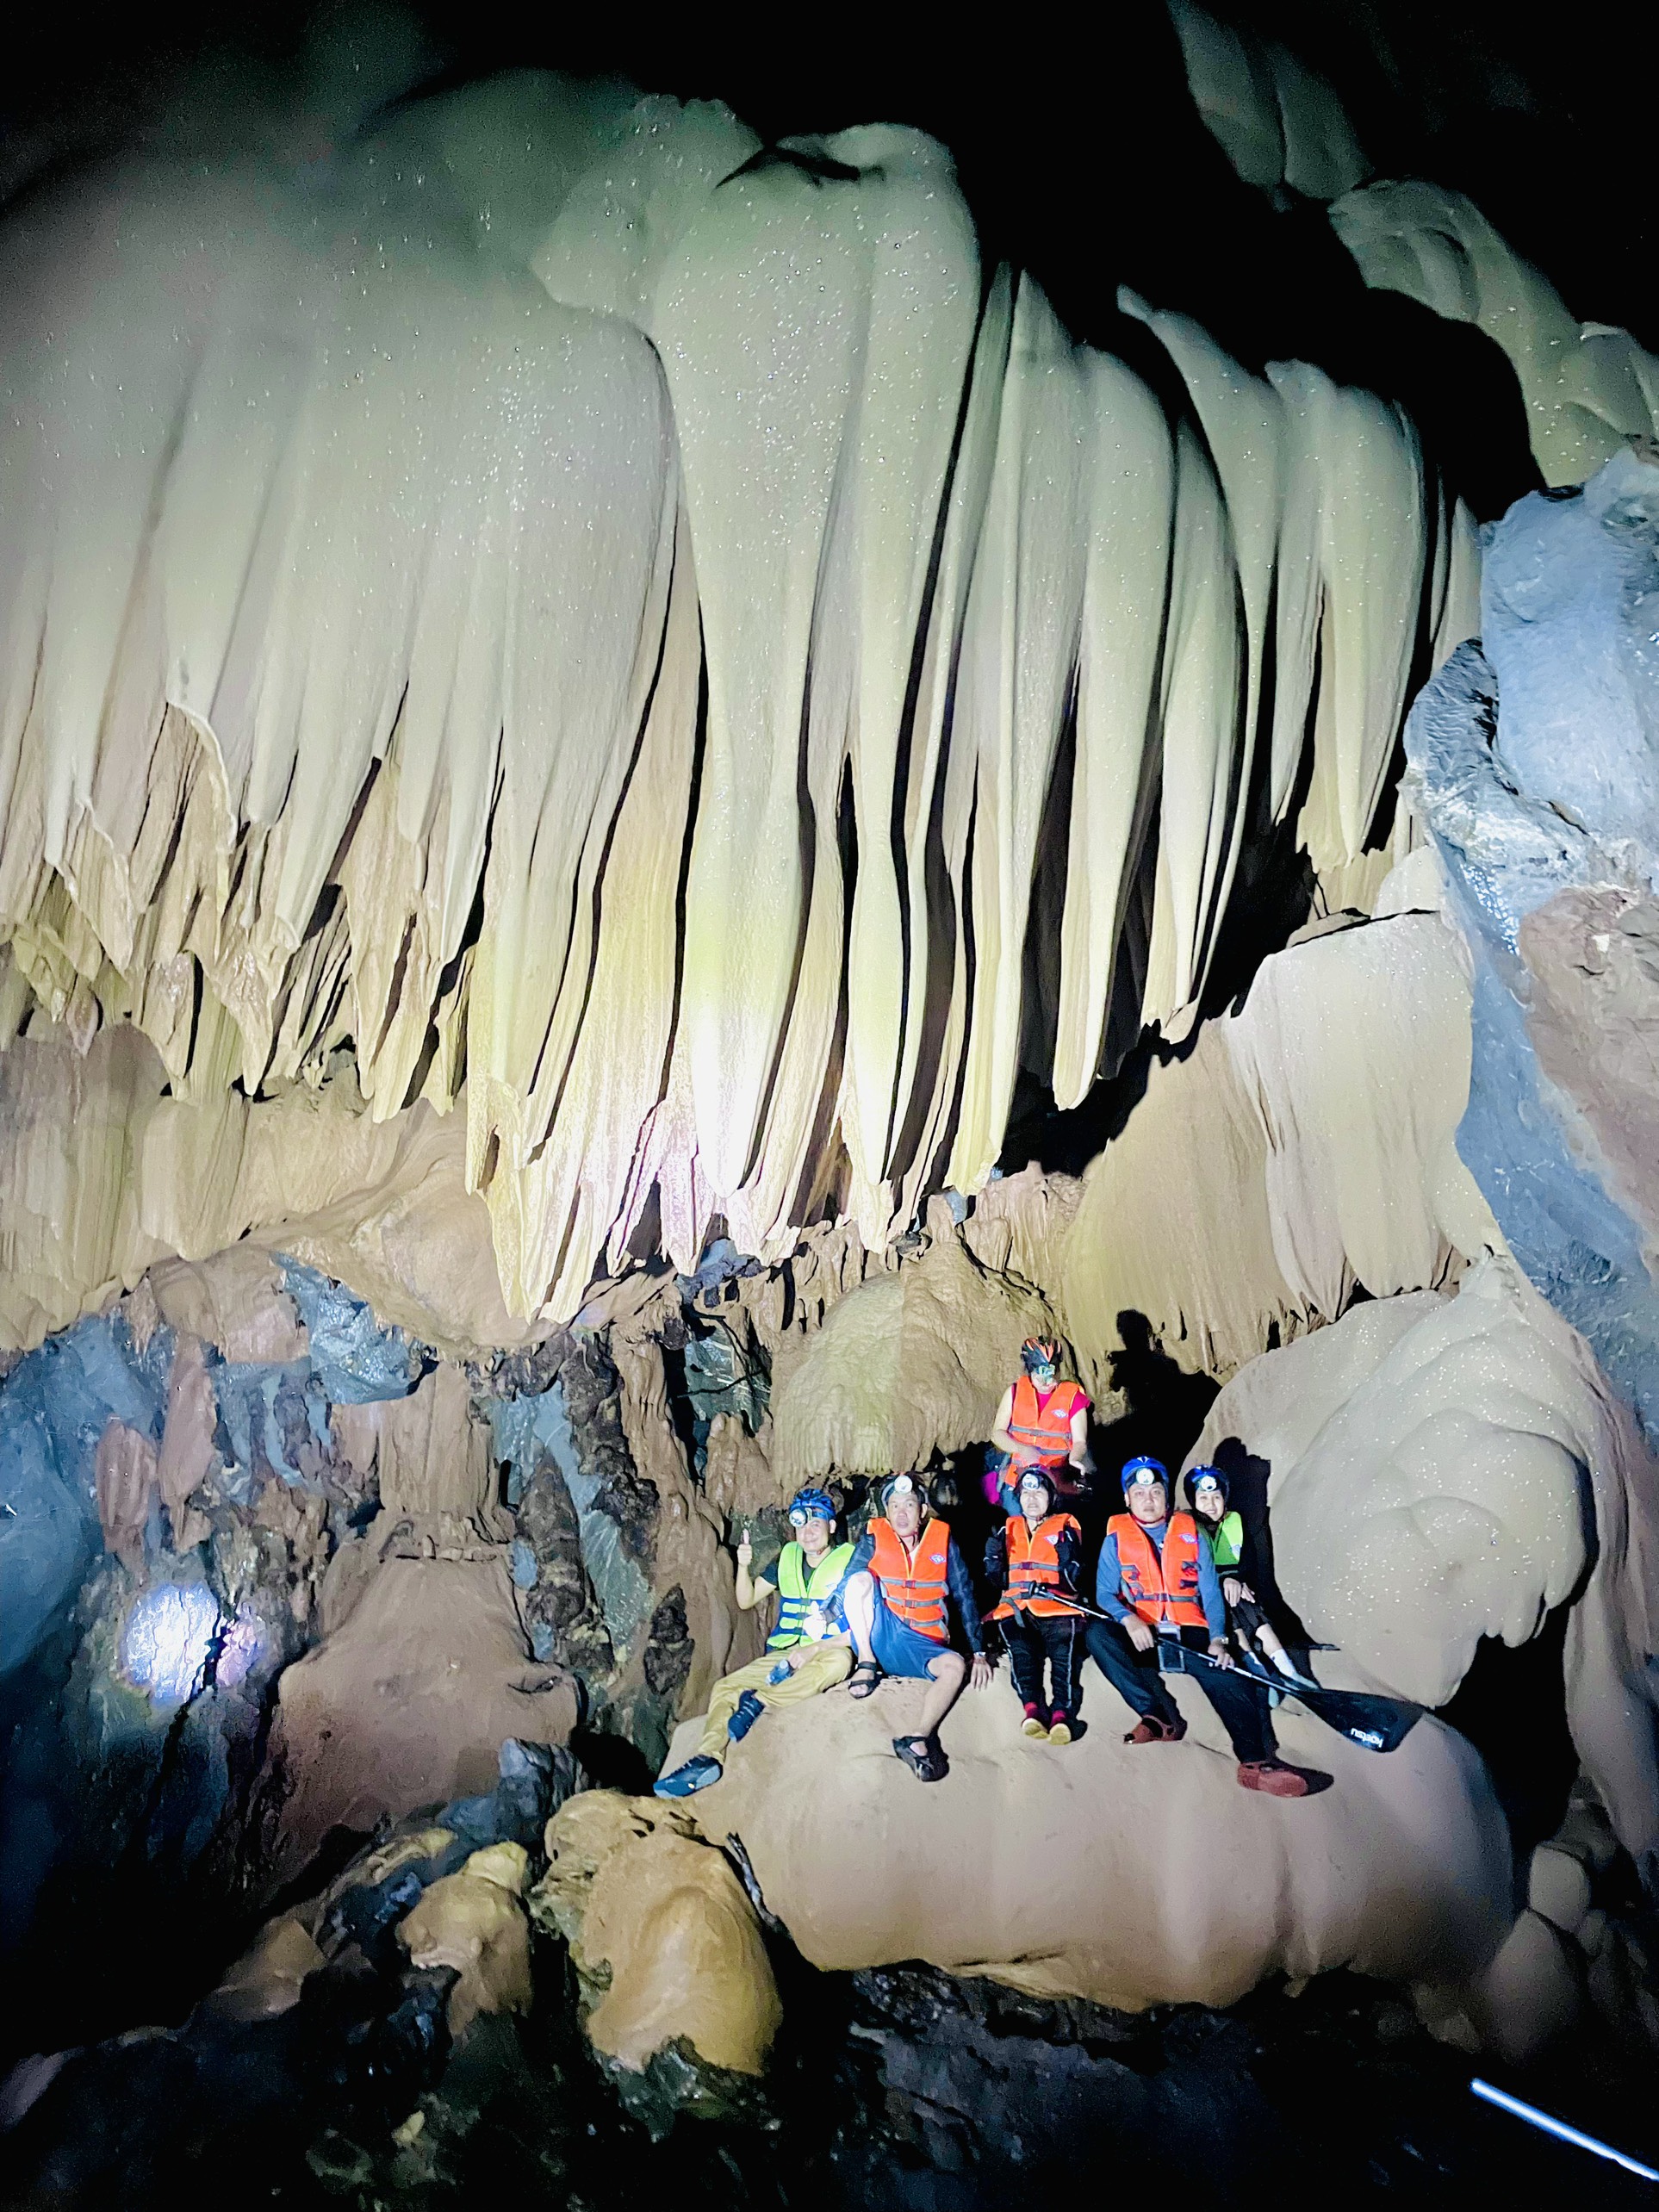 Cận cảnh vẻ đẹp mê hồn của hang Sơn Nữ vừa phát hiện ở Quảng Bình - Ảnh 8.